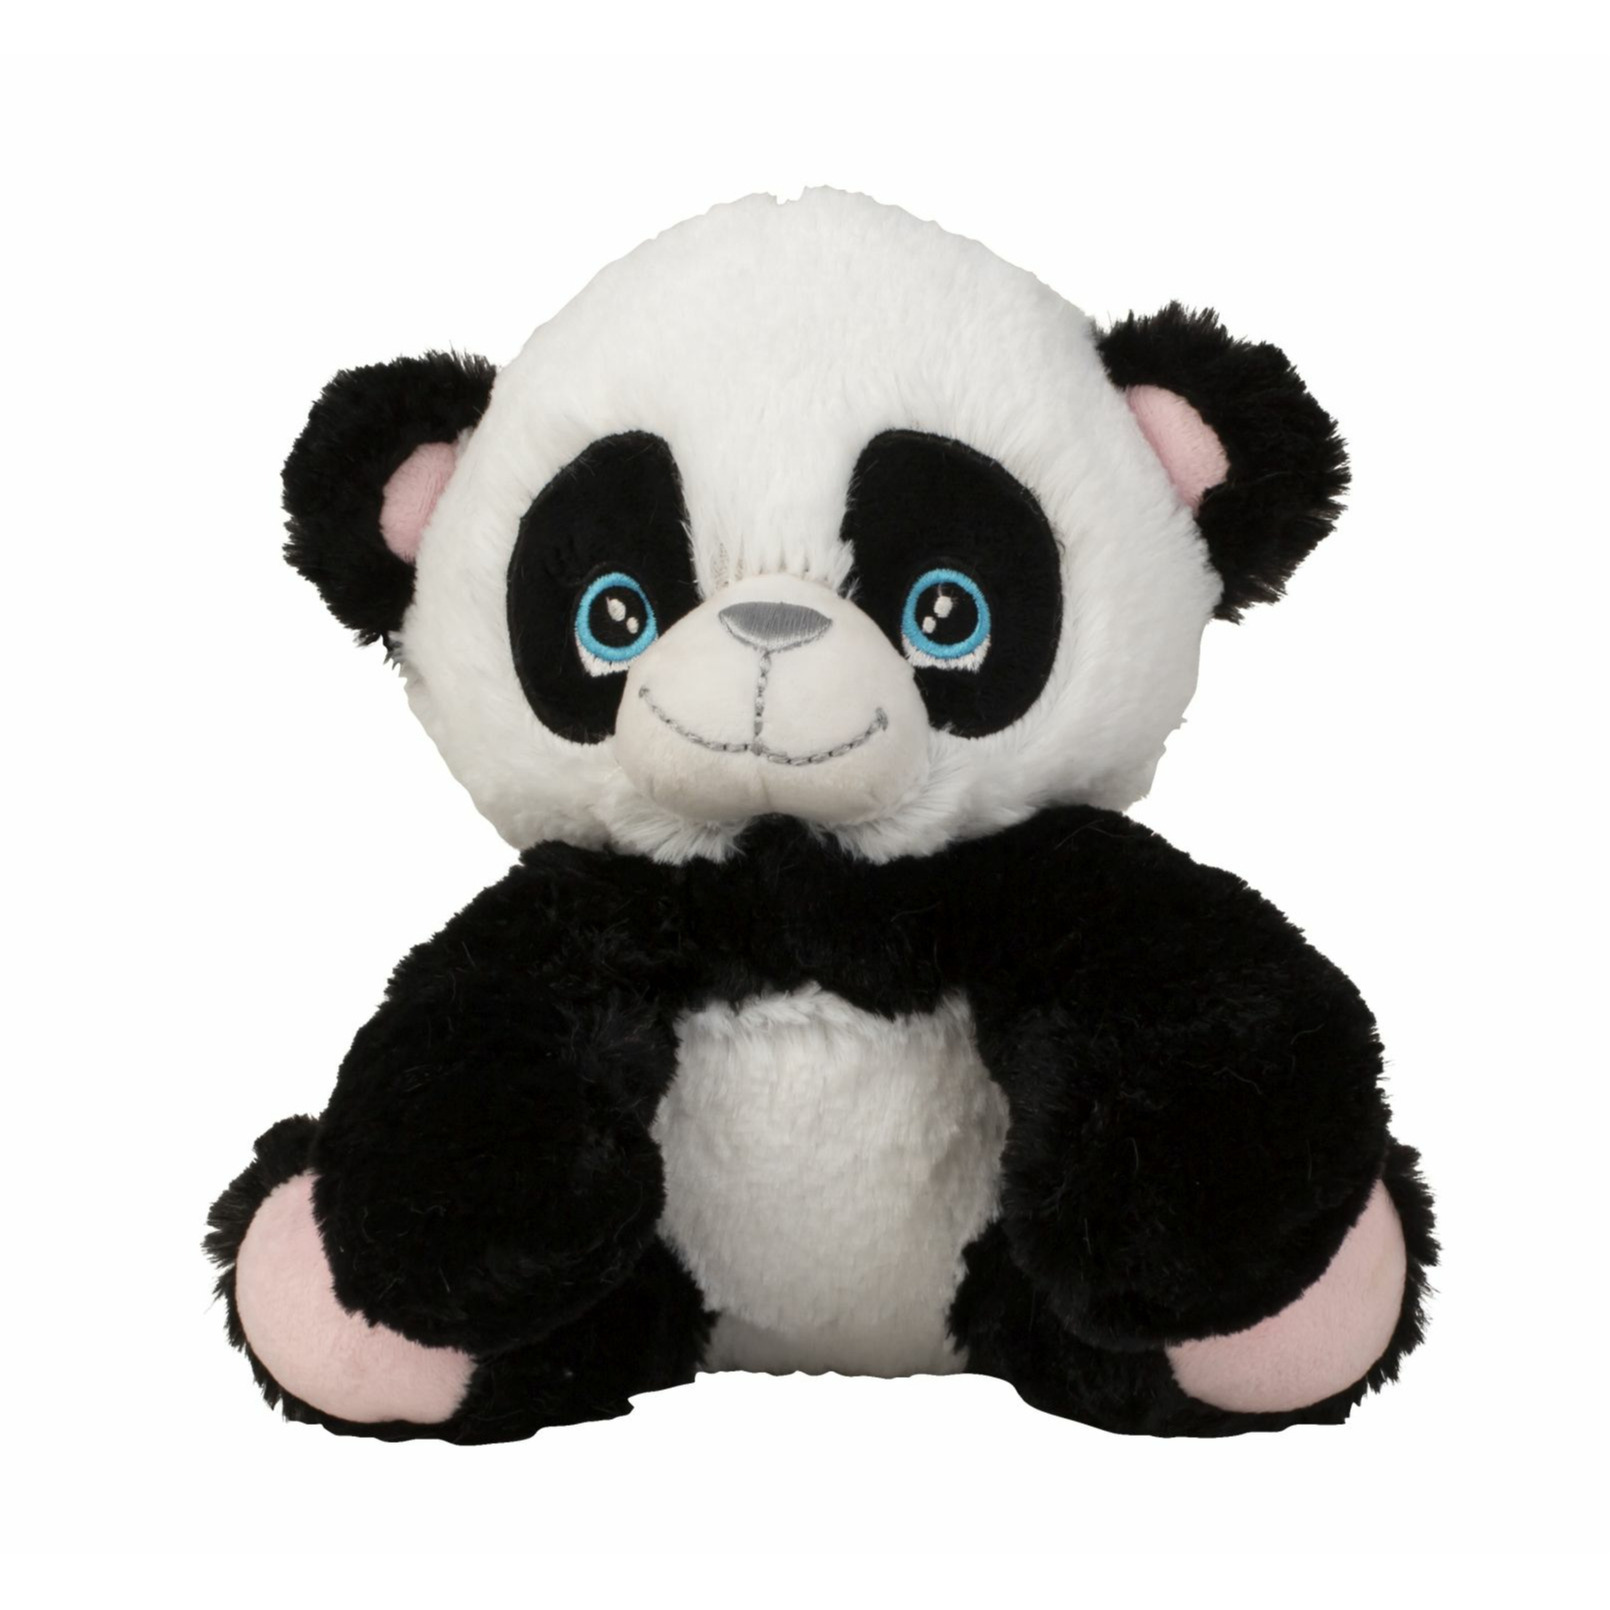 Panda beer knuffel van zachte pluche - speelgoed dieren - 21 cm